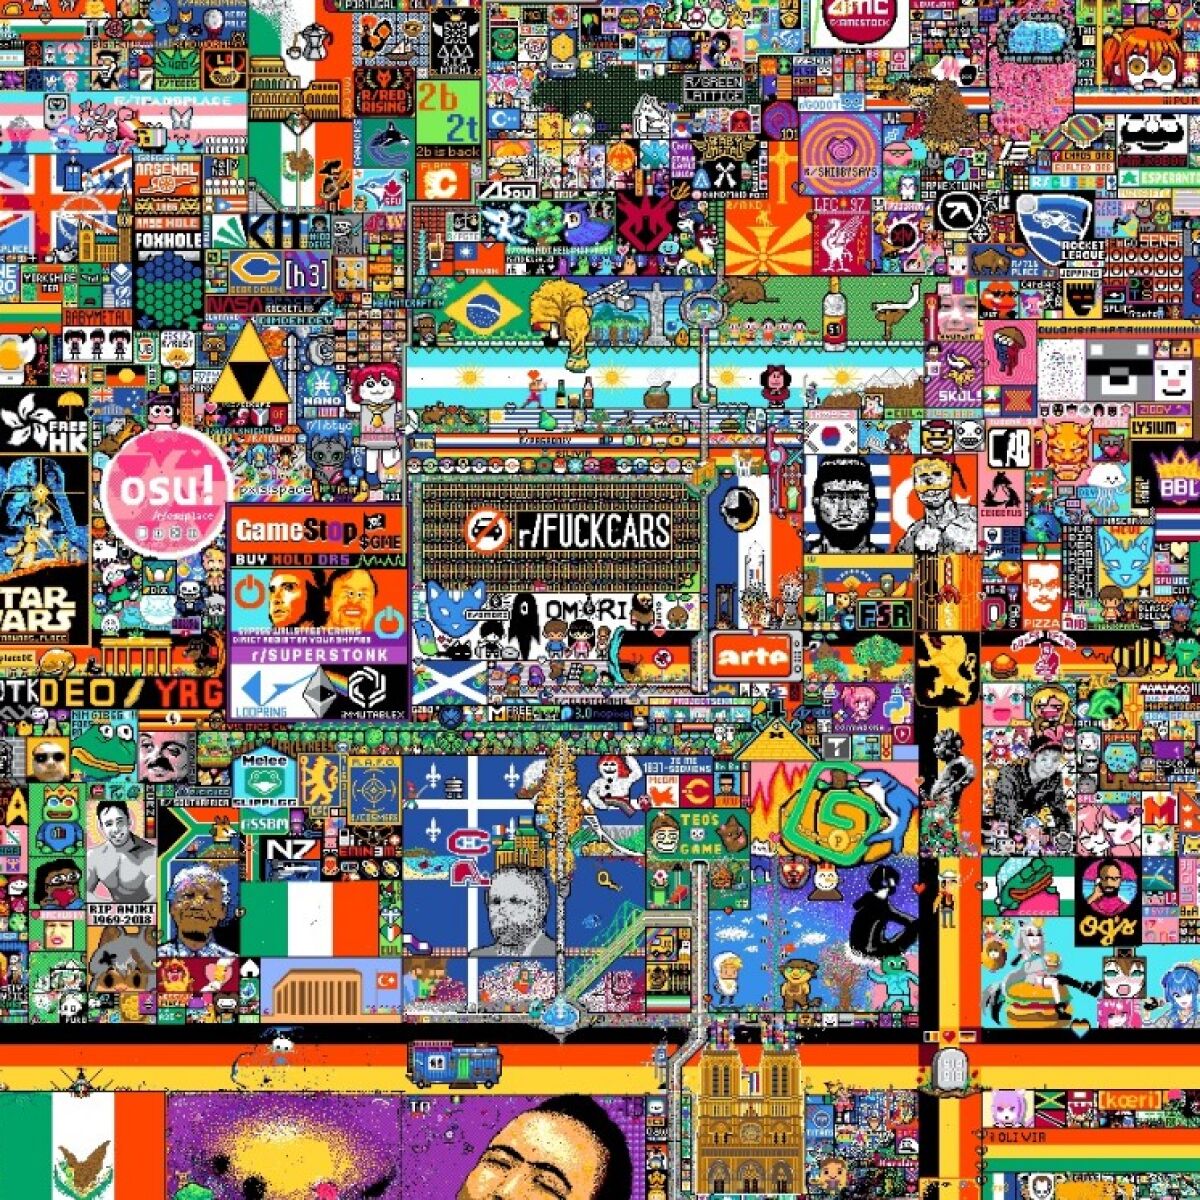 El mural de pixeles r/Place de Reddit se está vendiendo por partes como NFTs: algunas piezas por más de un millón de pesos en OpenSea